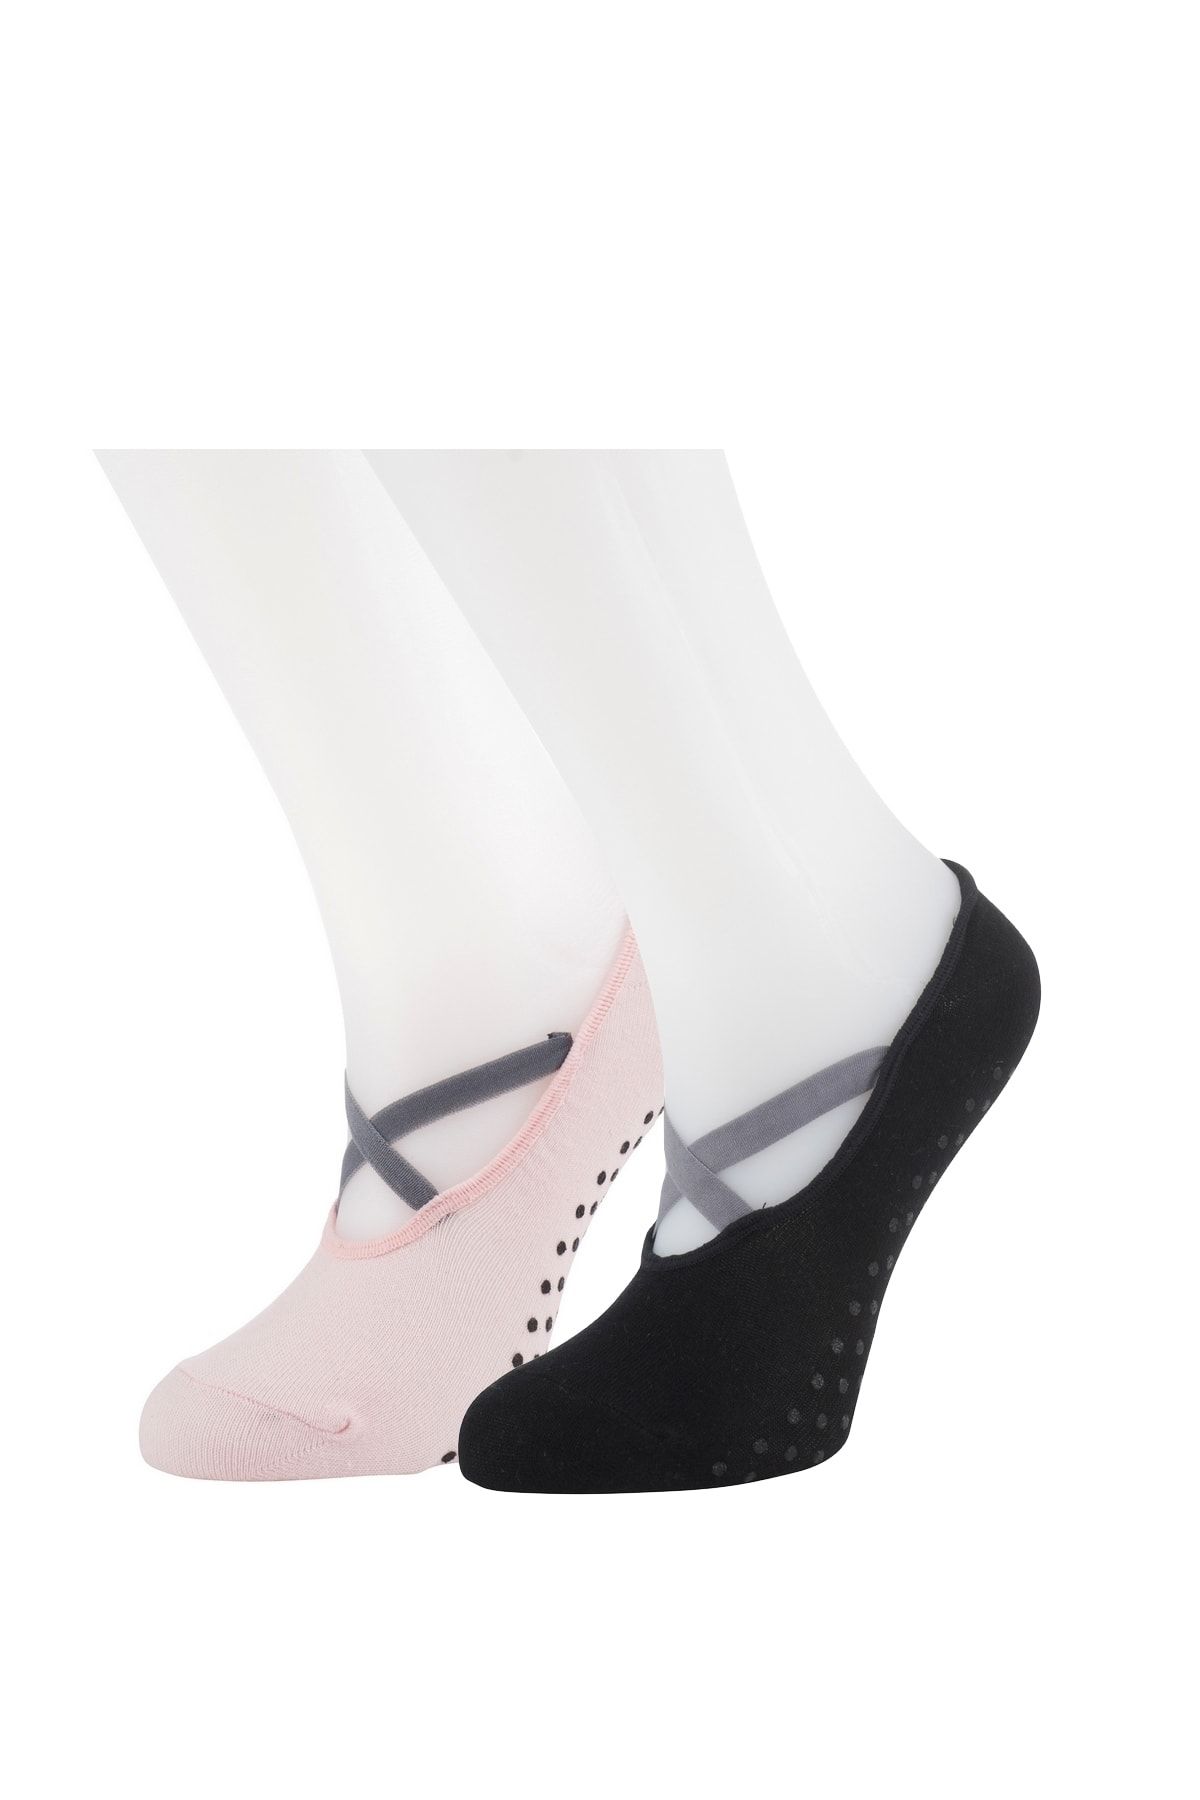 Moyra Socks 2'li Kadın Babet Pilates Ve Yoga Çorabı